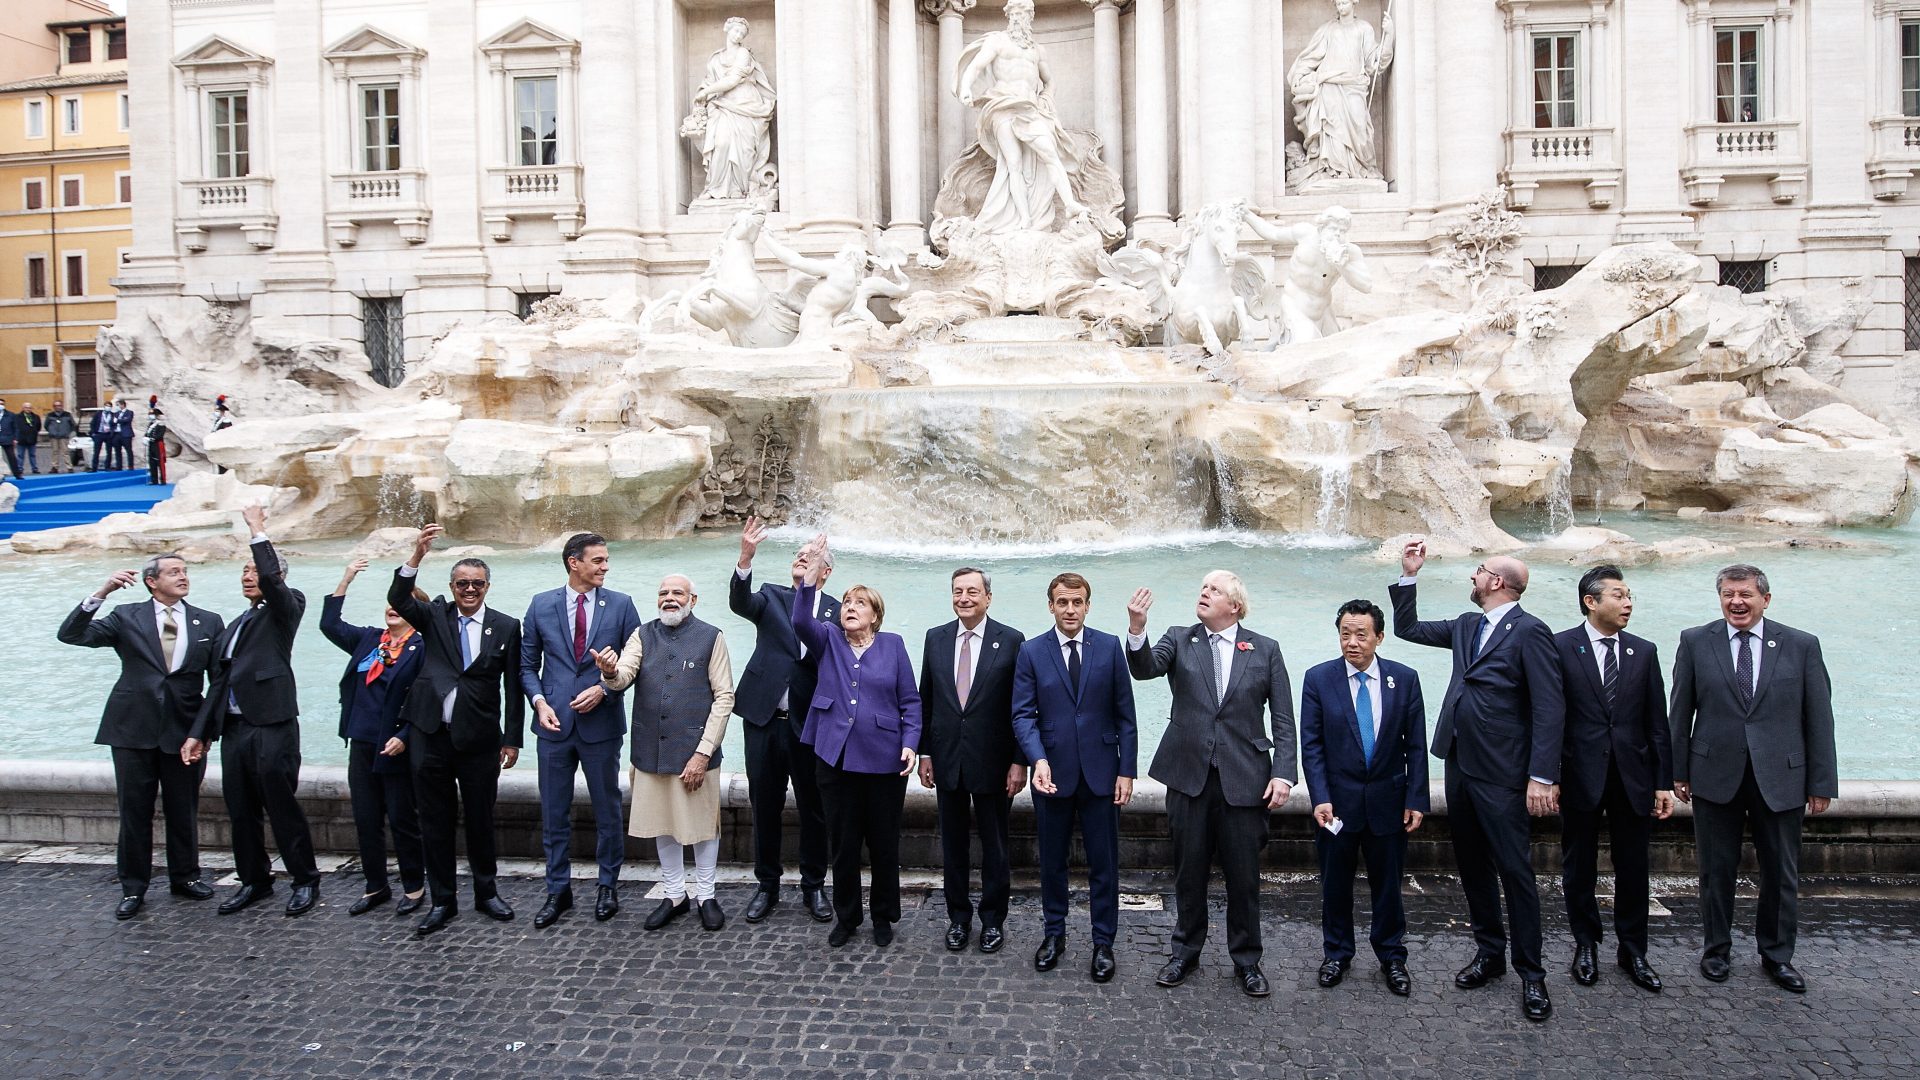 Die Staats- und Regierungschefs der G20-Staaten stehen vor dem Trevi-Brunnen in Rom. | dpa